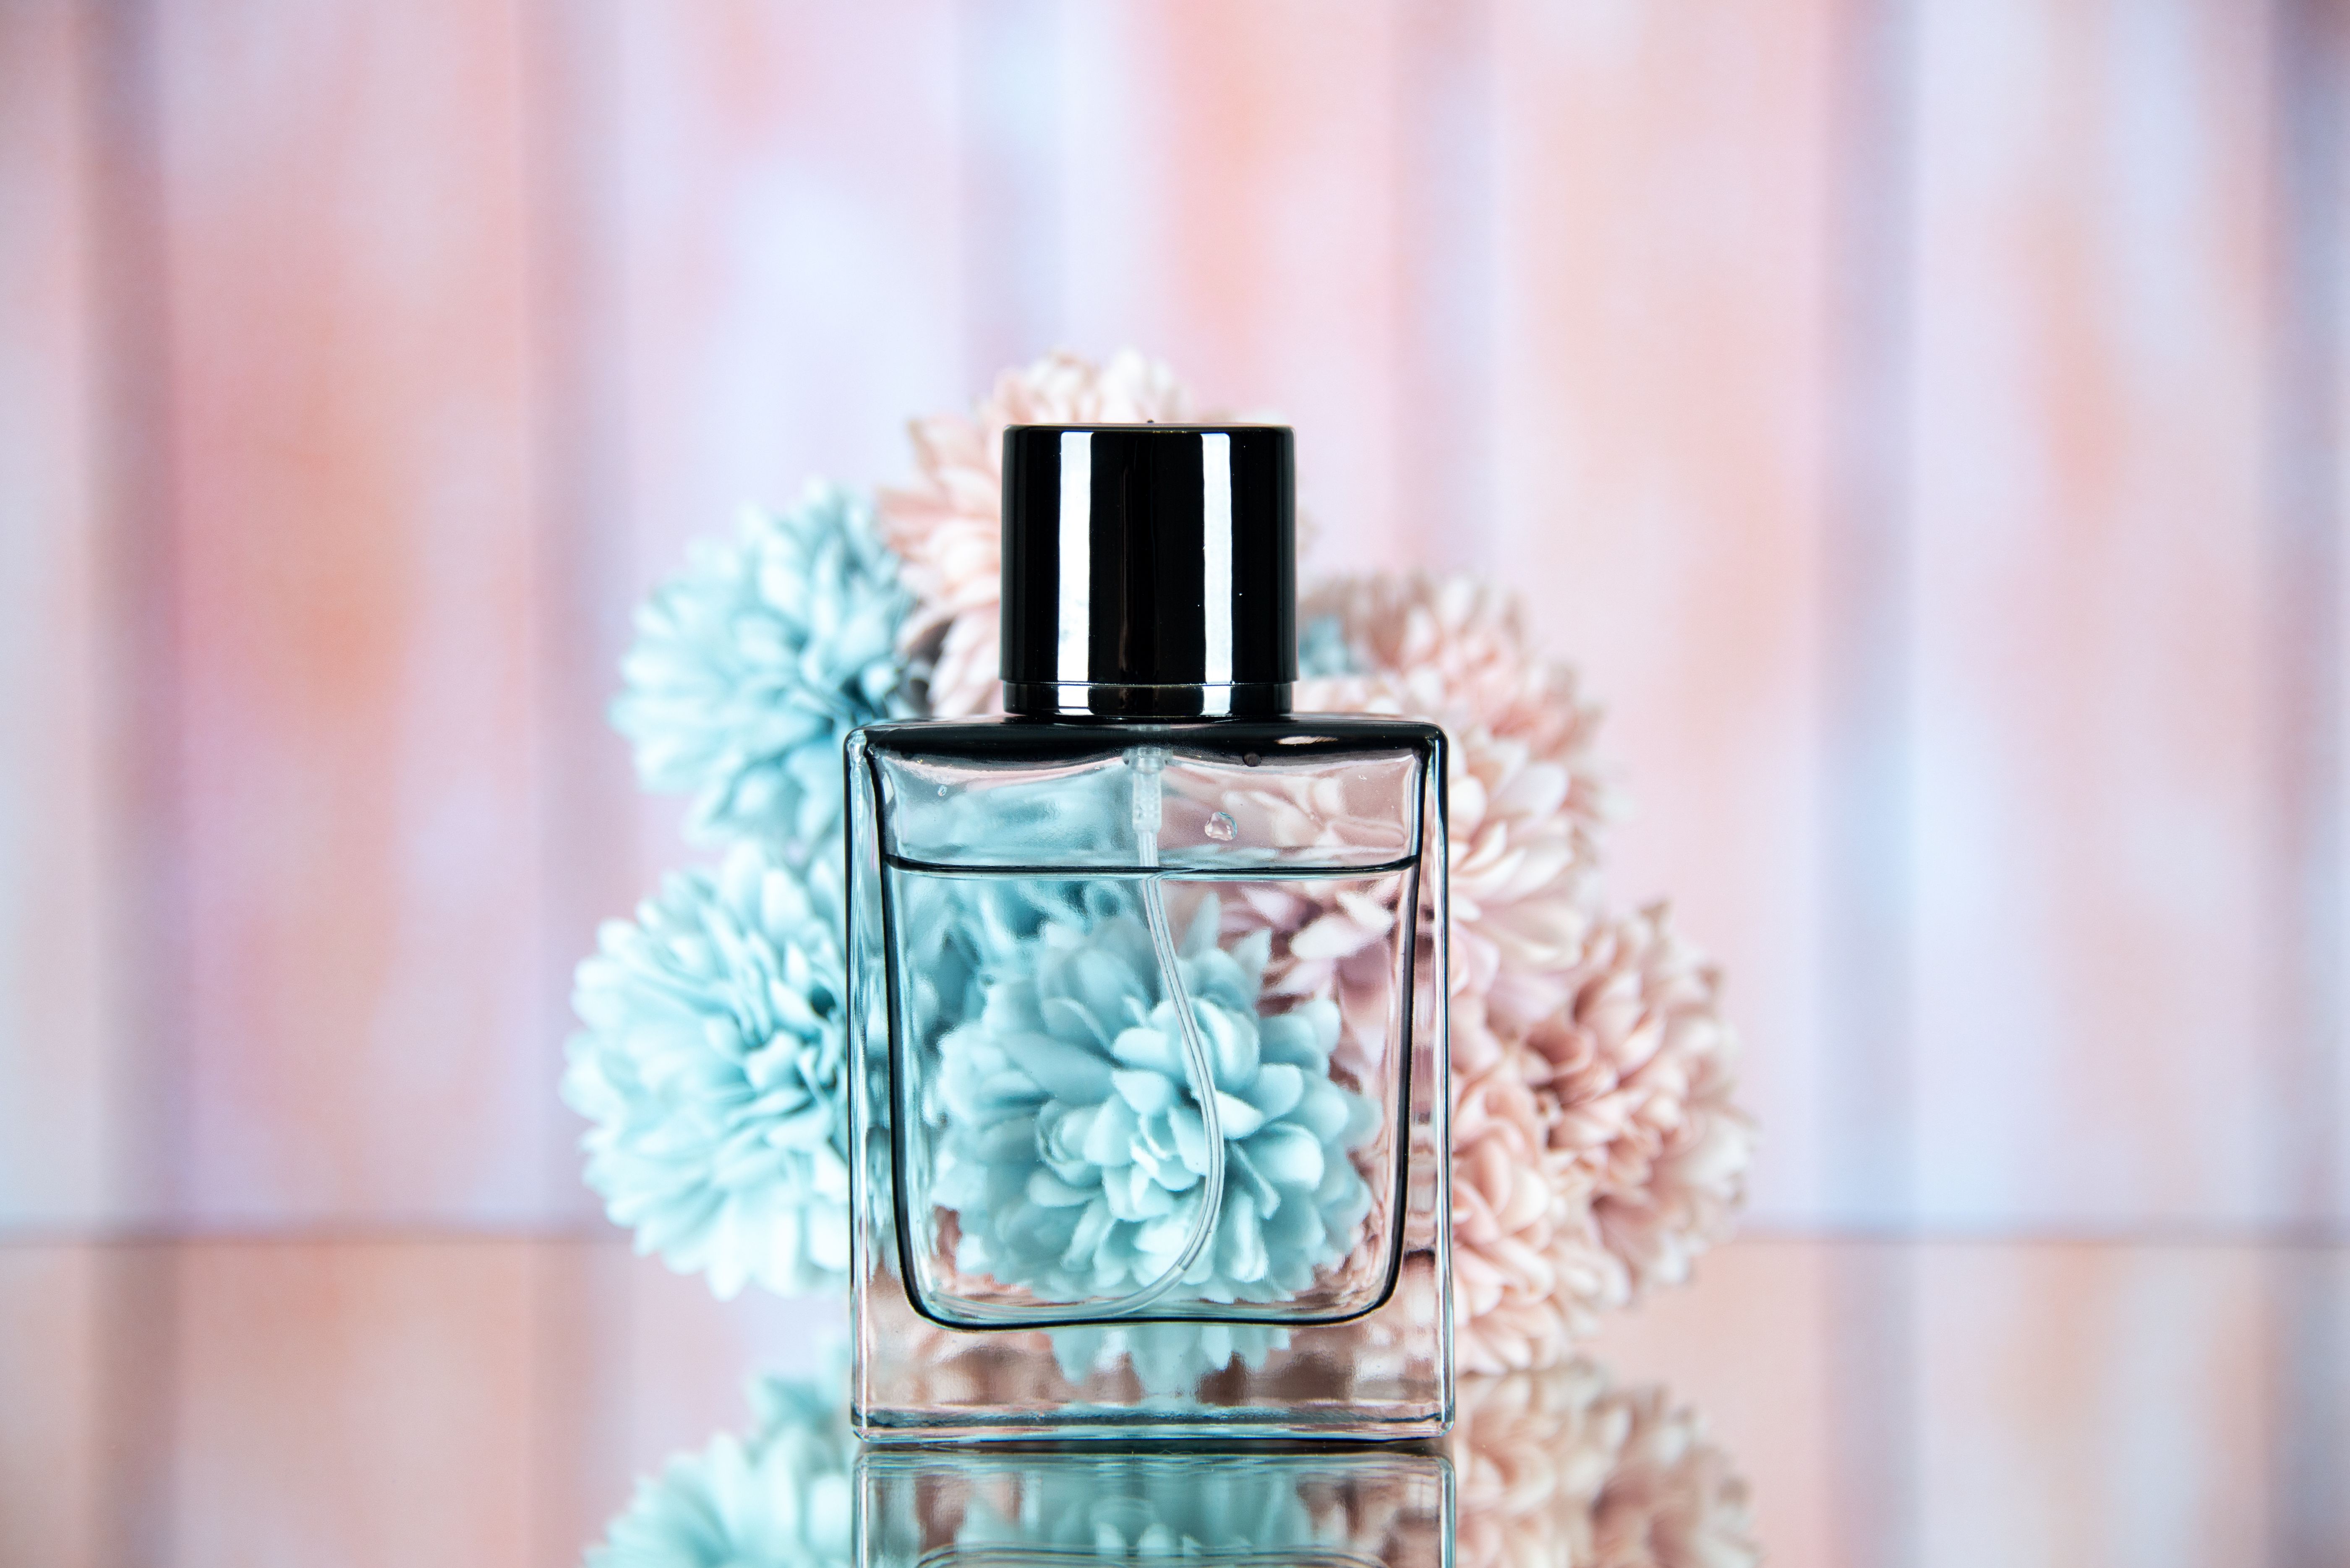 Вибір парфуму може багато розповісти про особистість